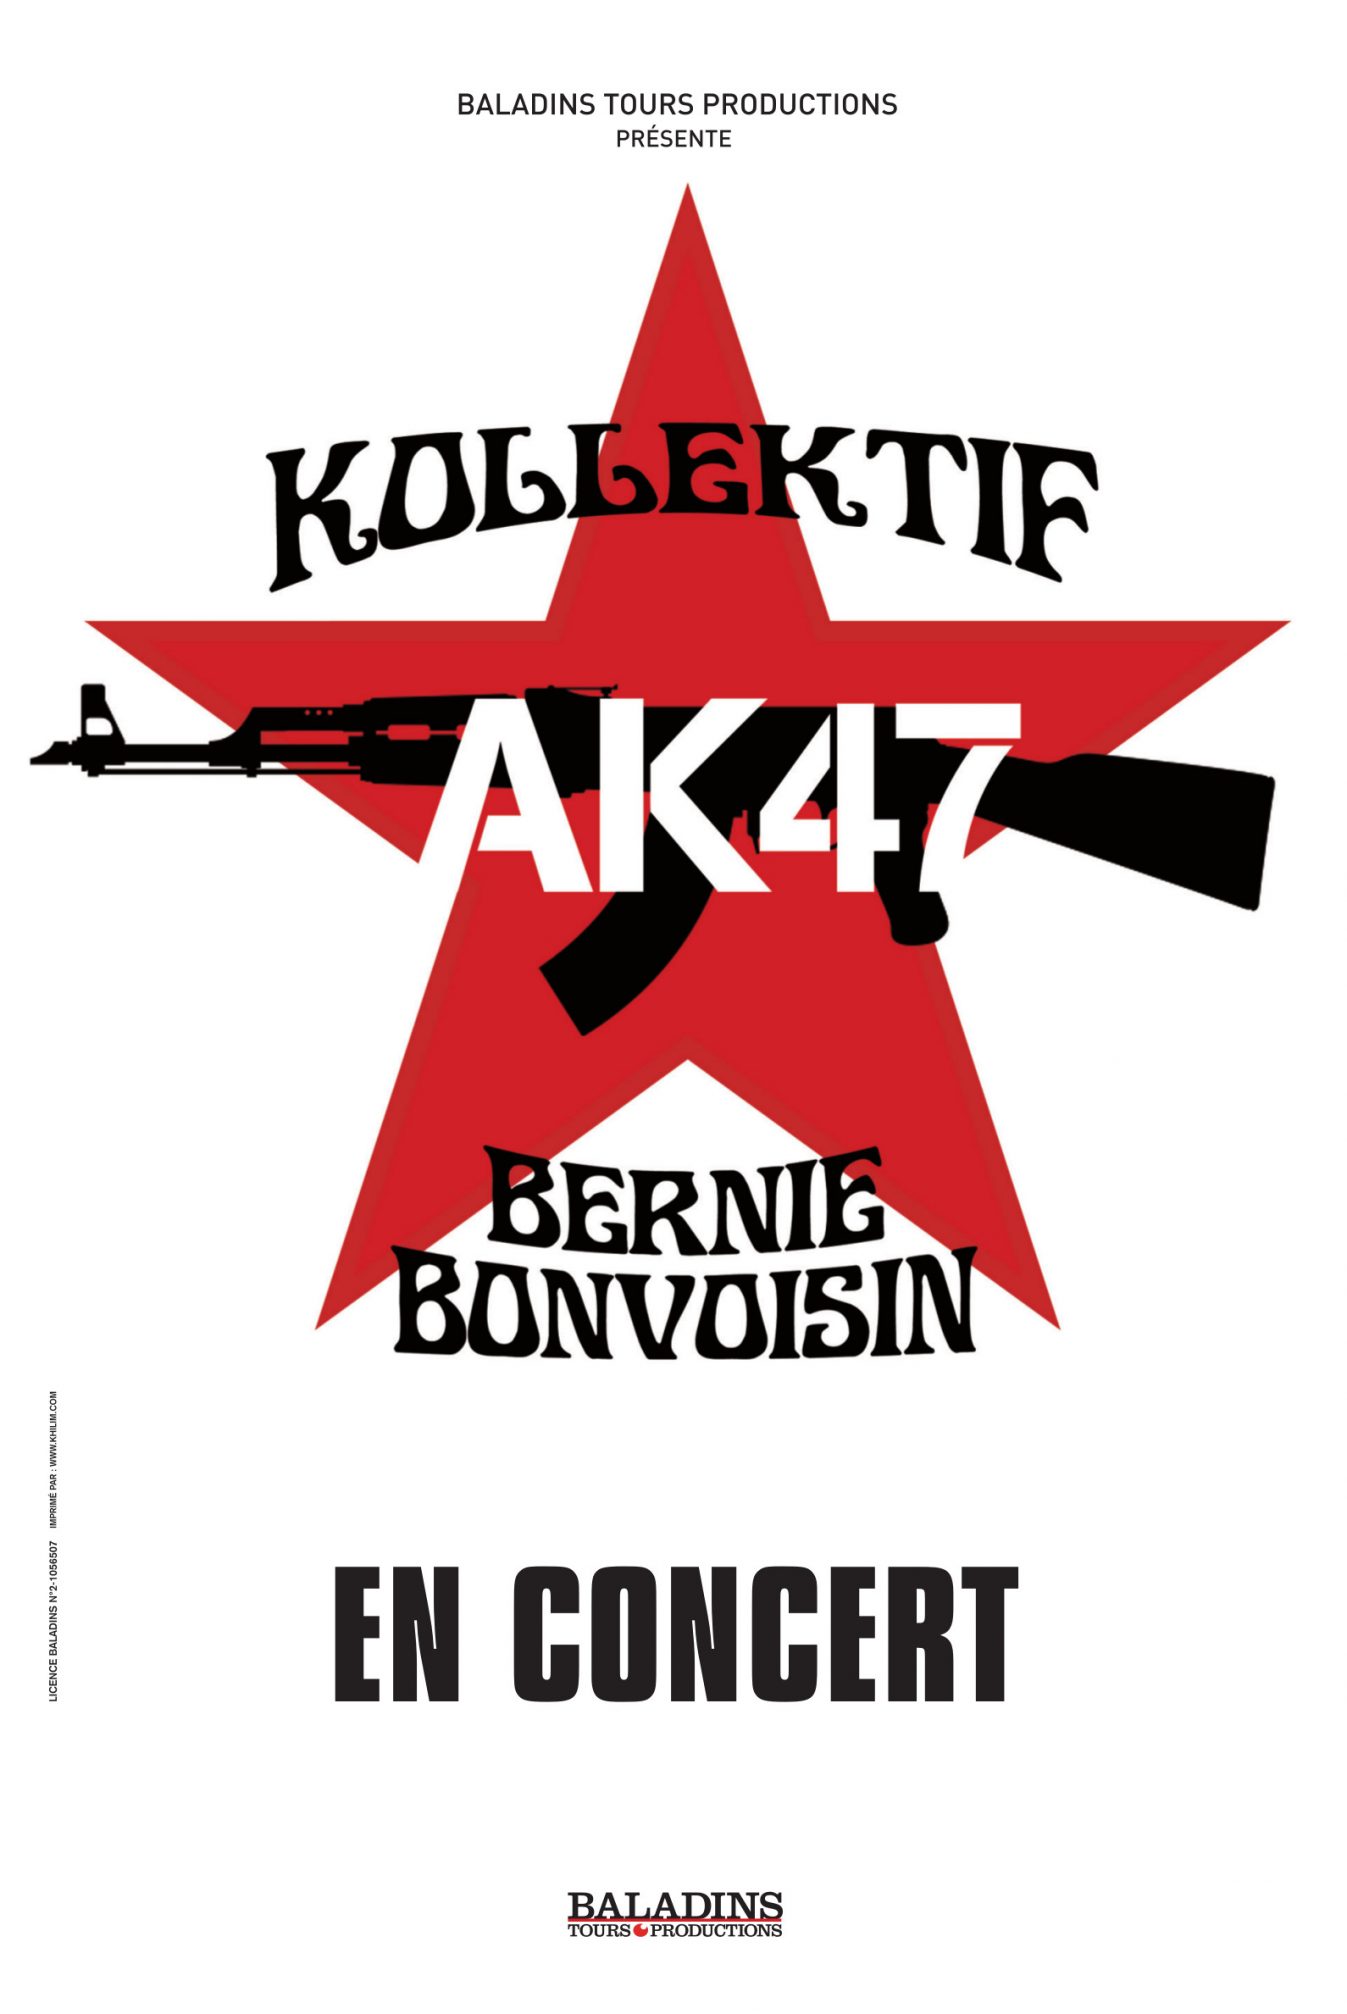 Kollektif AK47 : live report du concert de Marseille le 19 novembre 2013